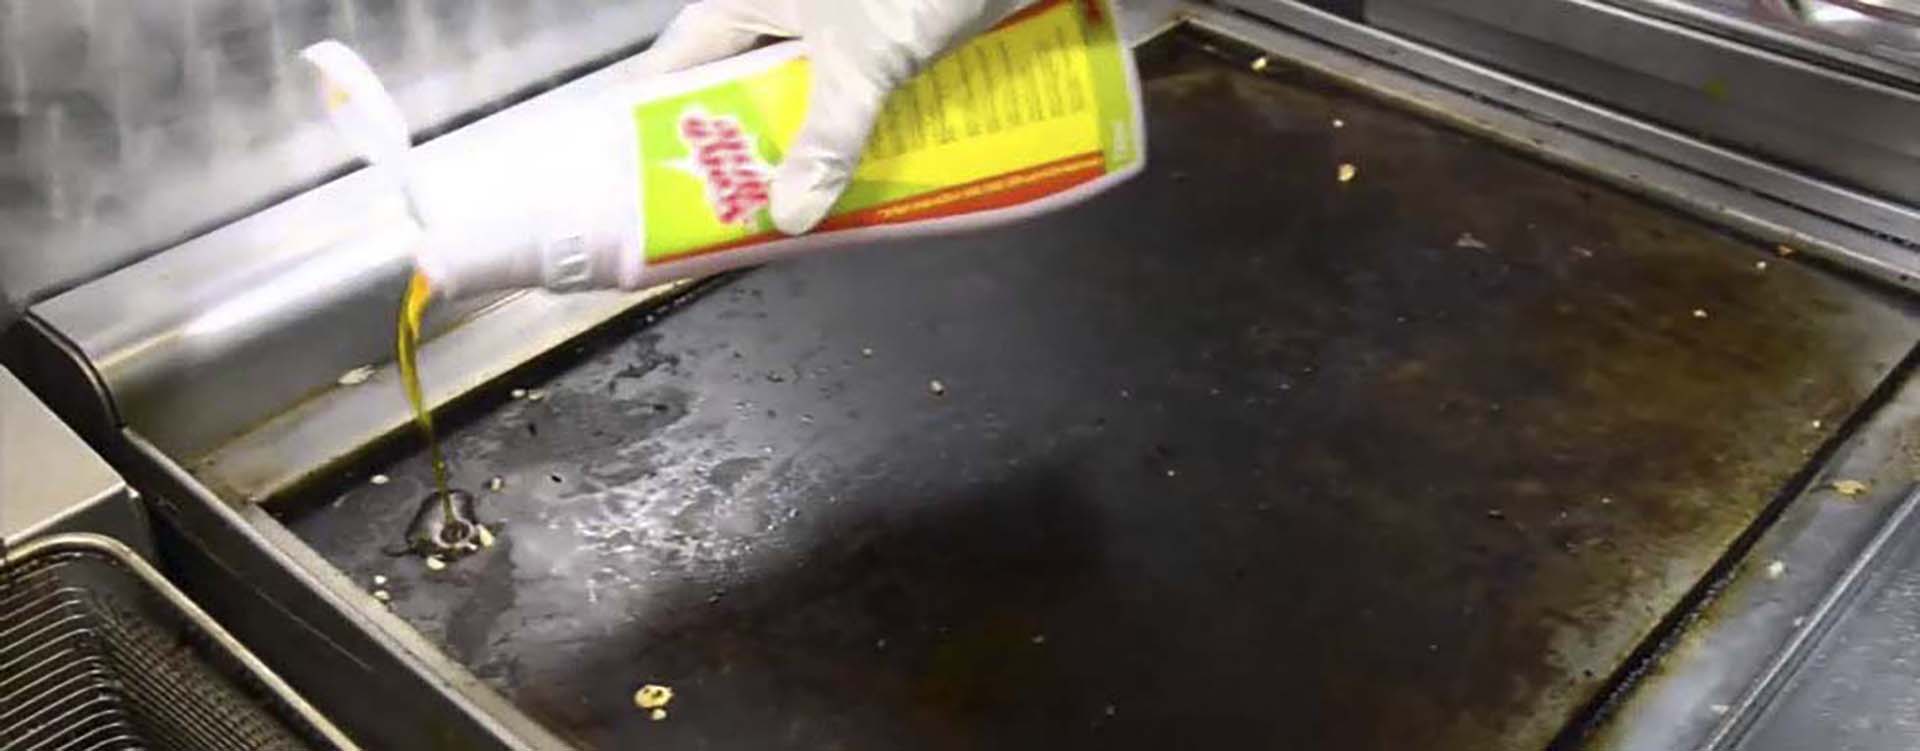 Cómo Limpiar la Plancha de Cocina de Restaurante